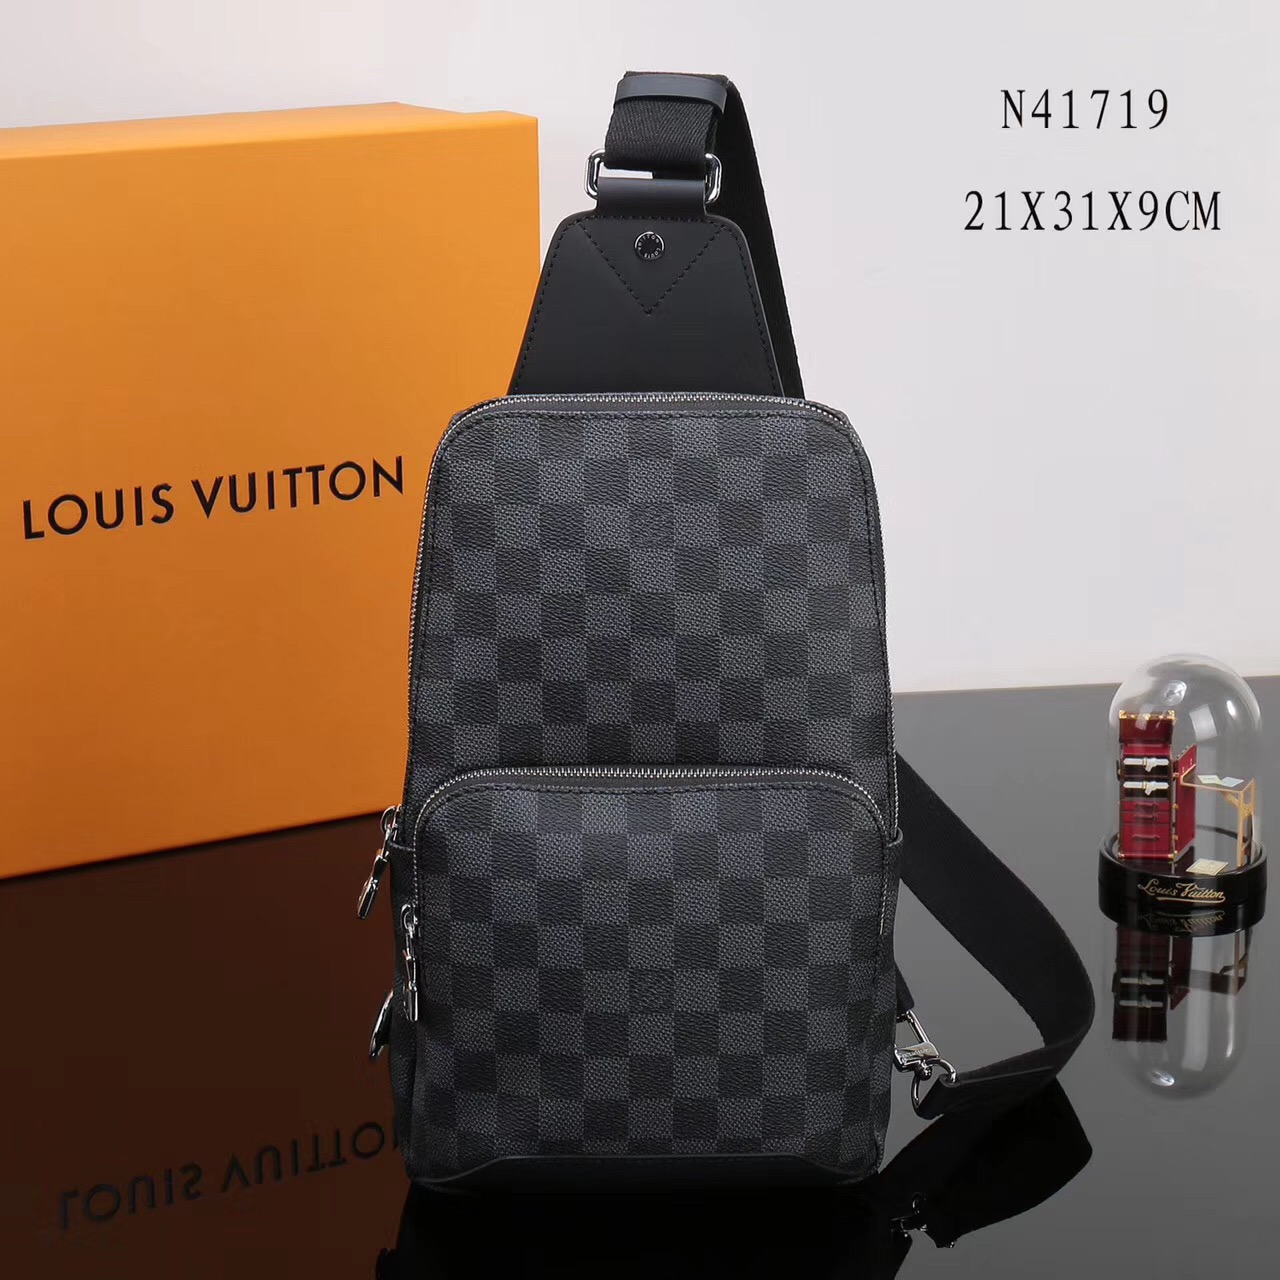 Louis Vuitton Satchel Men Oultet Website, Save 52% | jlcatj.gob.mx